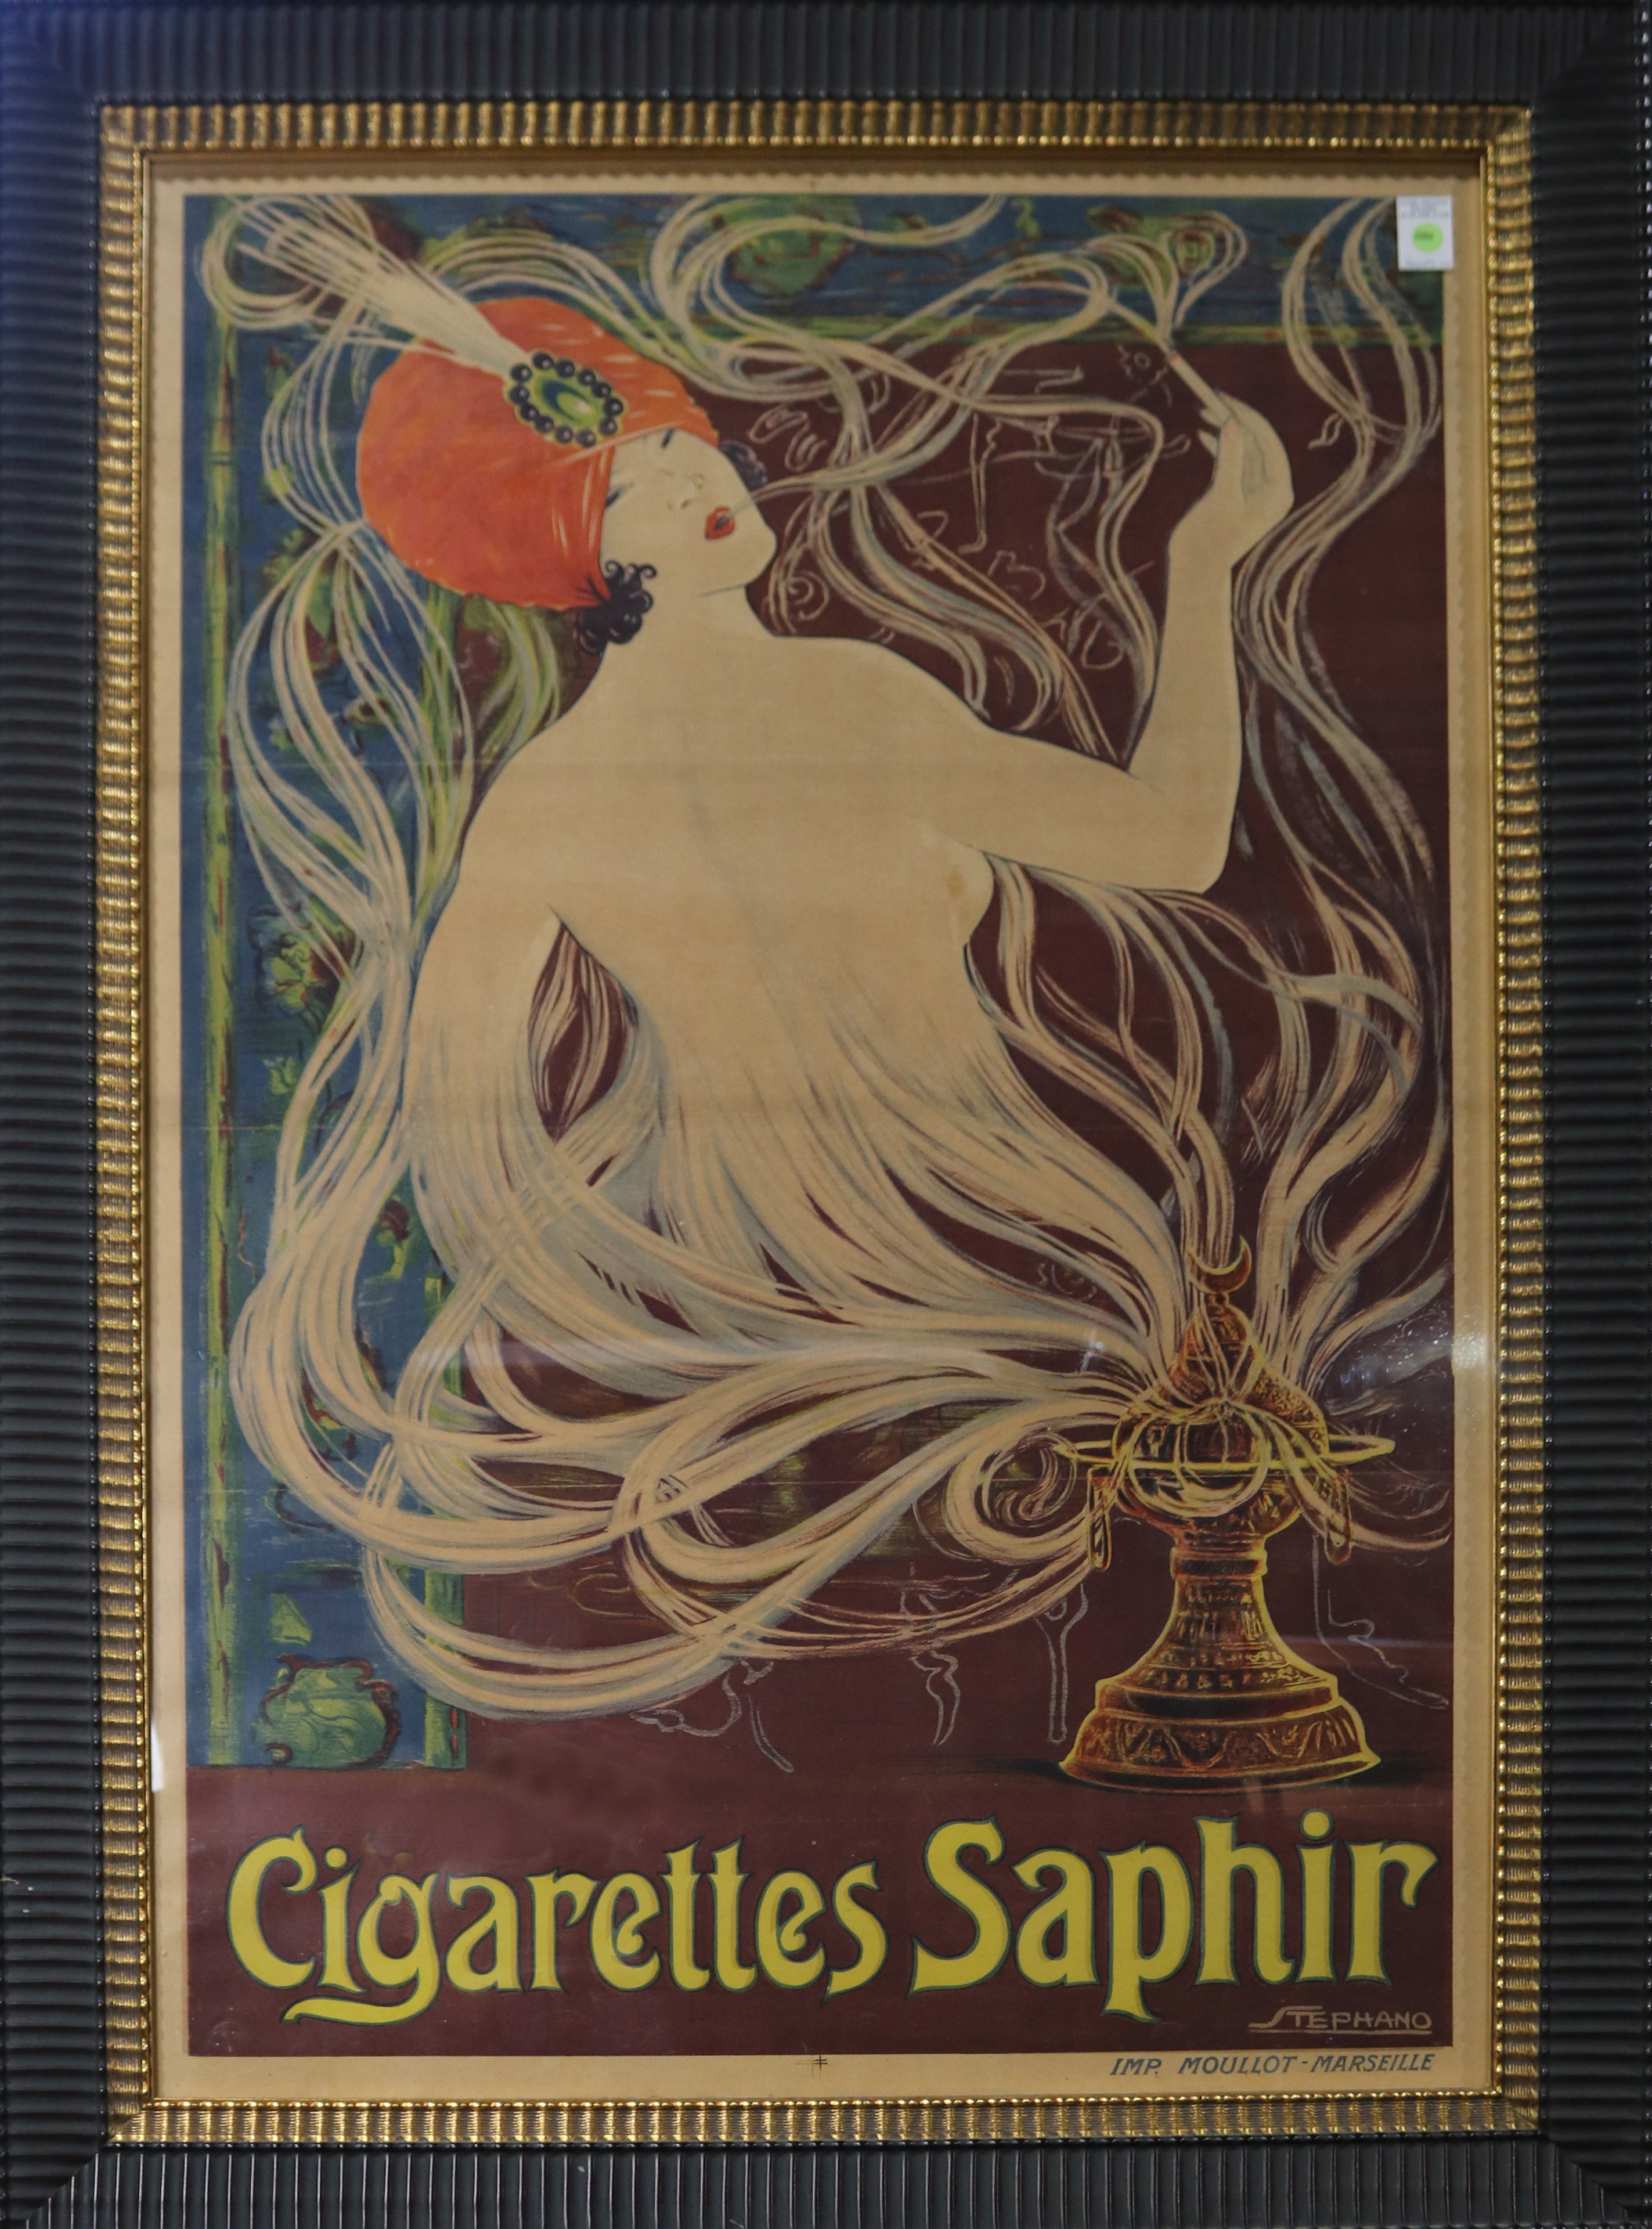 Vintage Poster, Cigarettes Saphir - Image 2 of 4